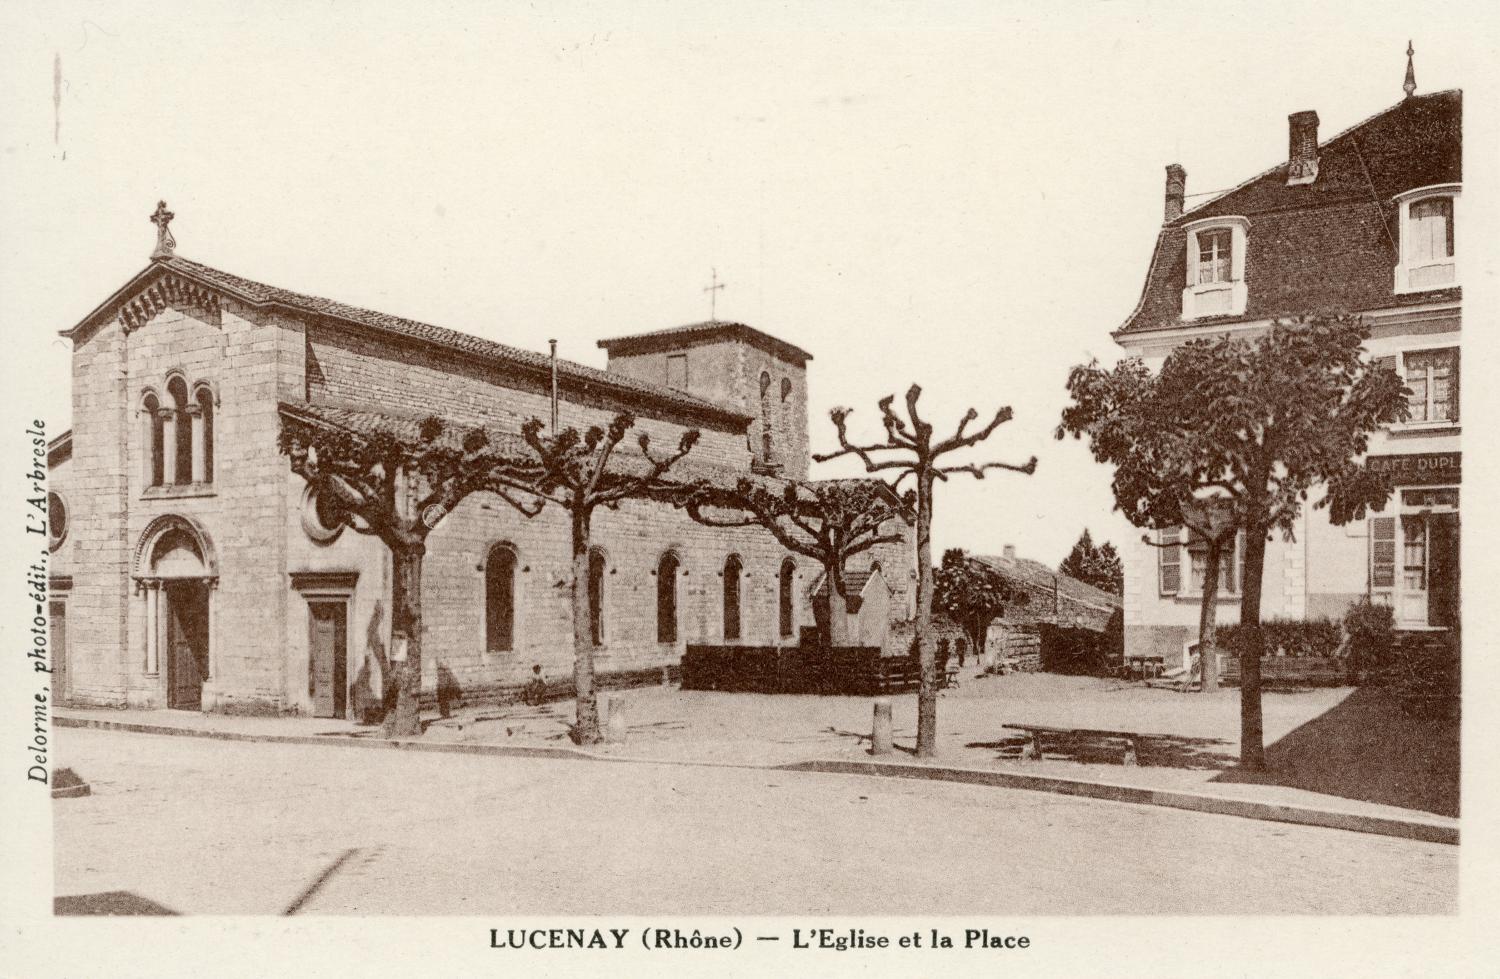 Lucenay (Rhône). - L'Eglise et la Place